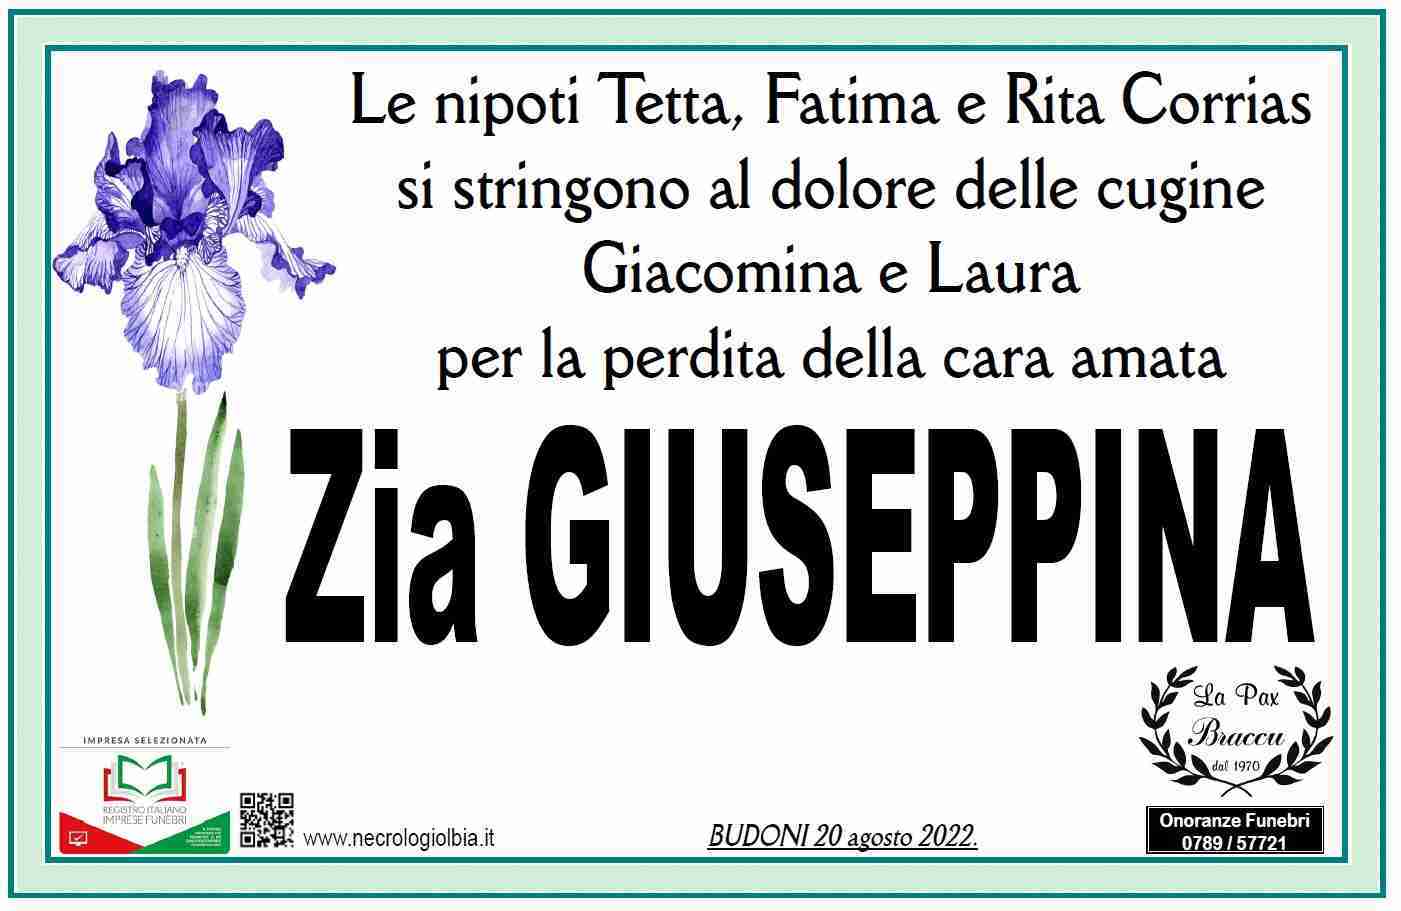 Giuseppina Satta